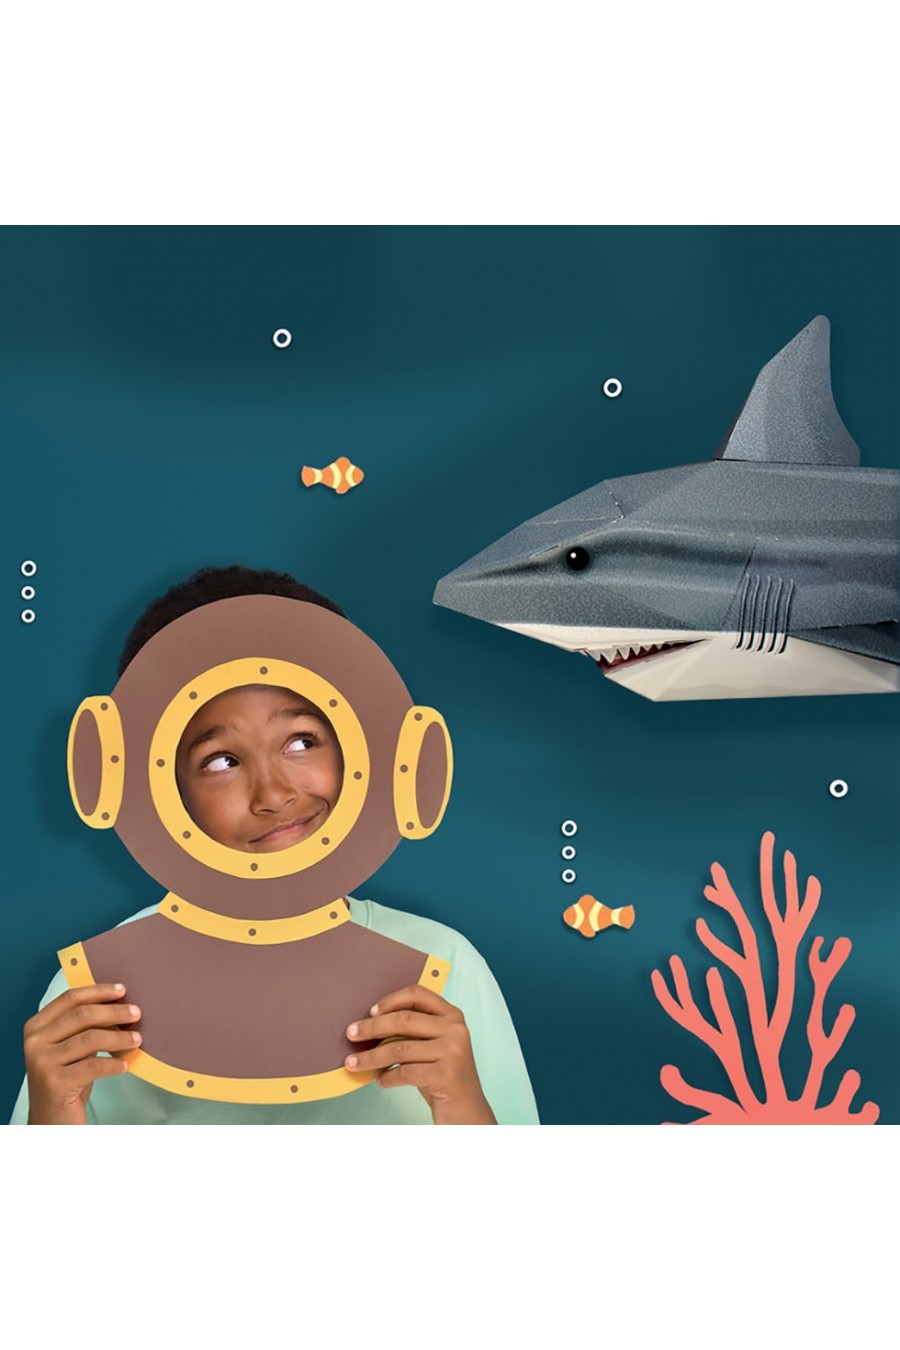 Veja como projetar animais 3D do Google e colocar um tubarão na sala de  casa – Utopia